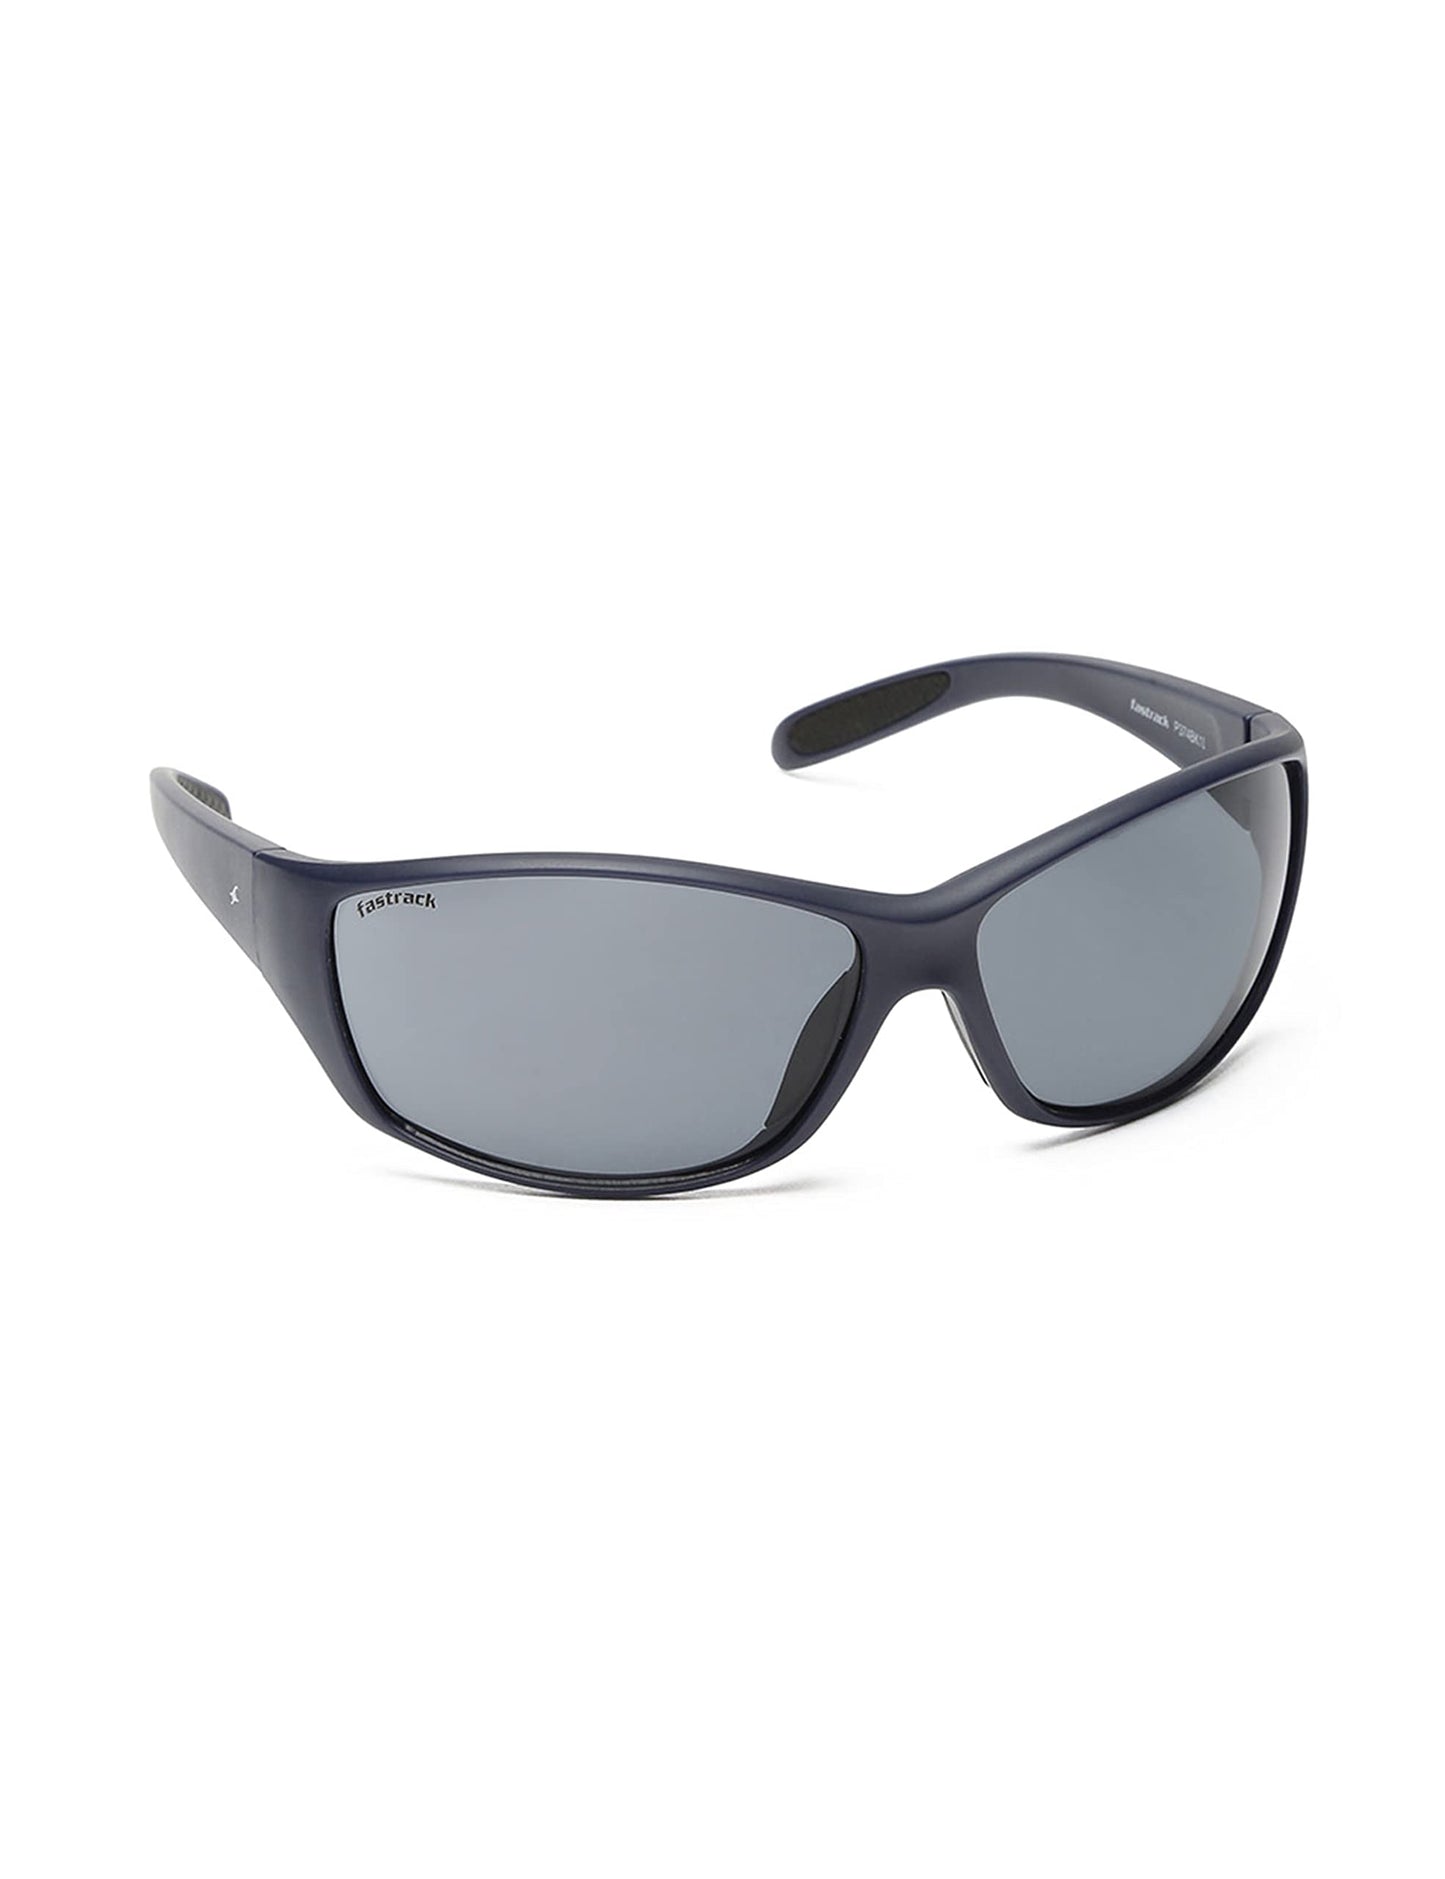 Fastrack Men's 100% UV protected Black Lens Sporty Sunglasses 